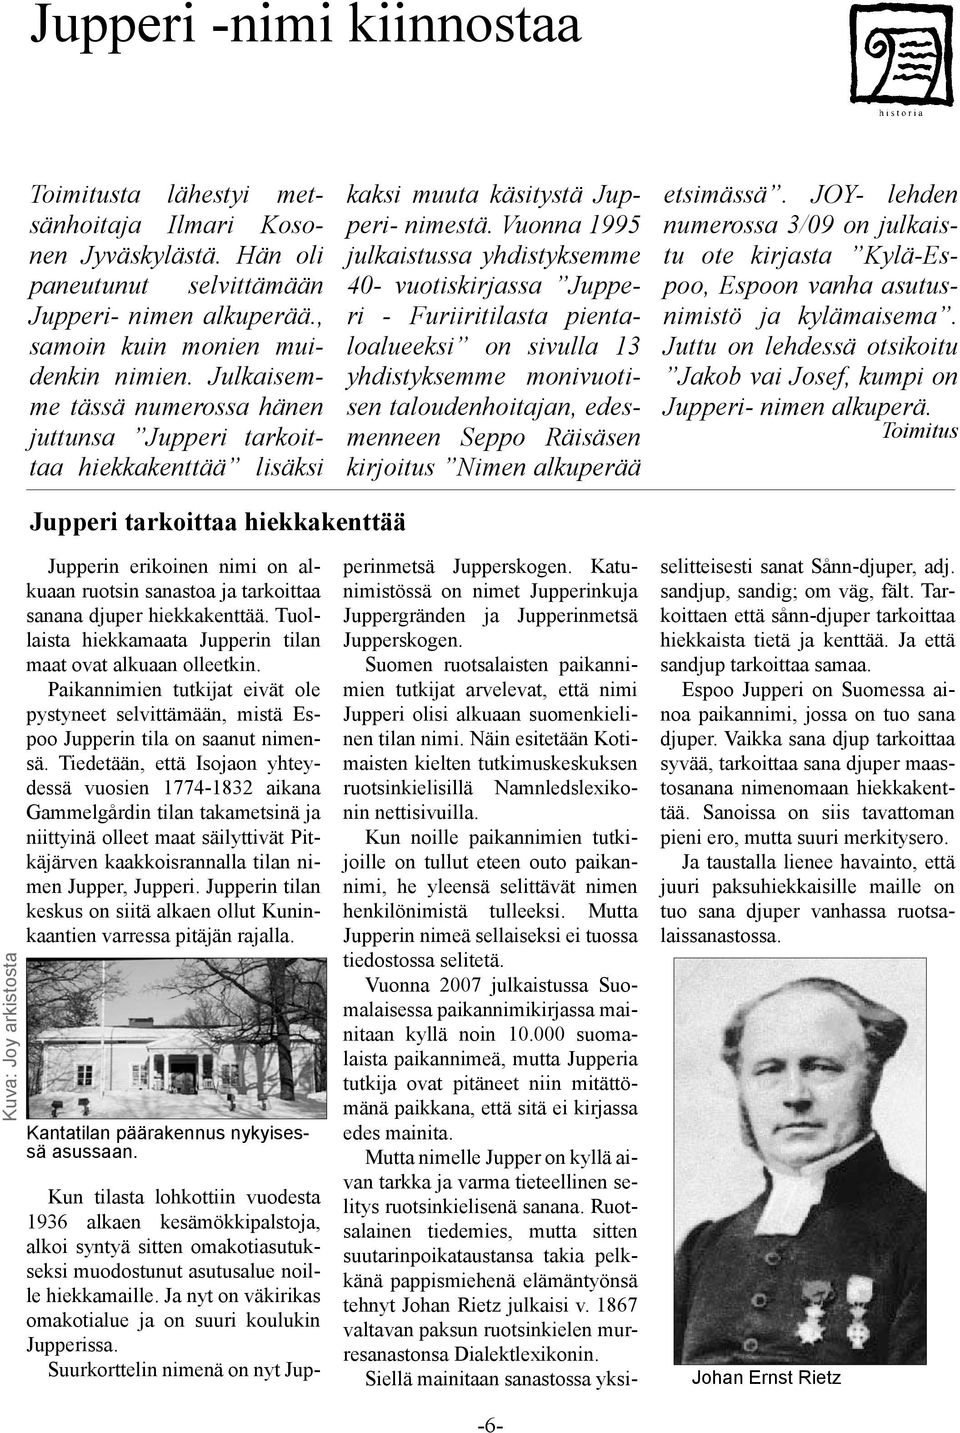 Vuonna 1995 julkaistussa yhdistyksemme 40- vuotiskirjassa Jupperi - Furiiritilasta pientaloalueeksi on sivulla 13 yhdistyksemme monivuotisen taloudenhoitajan, edesmenneen Seppo Räisäsen kirjoitus